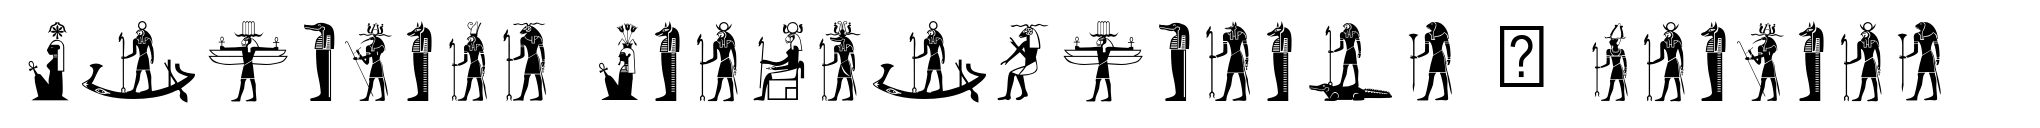 Egyptian Hieroglyphics – Deities image